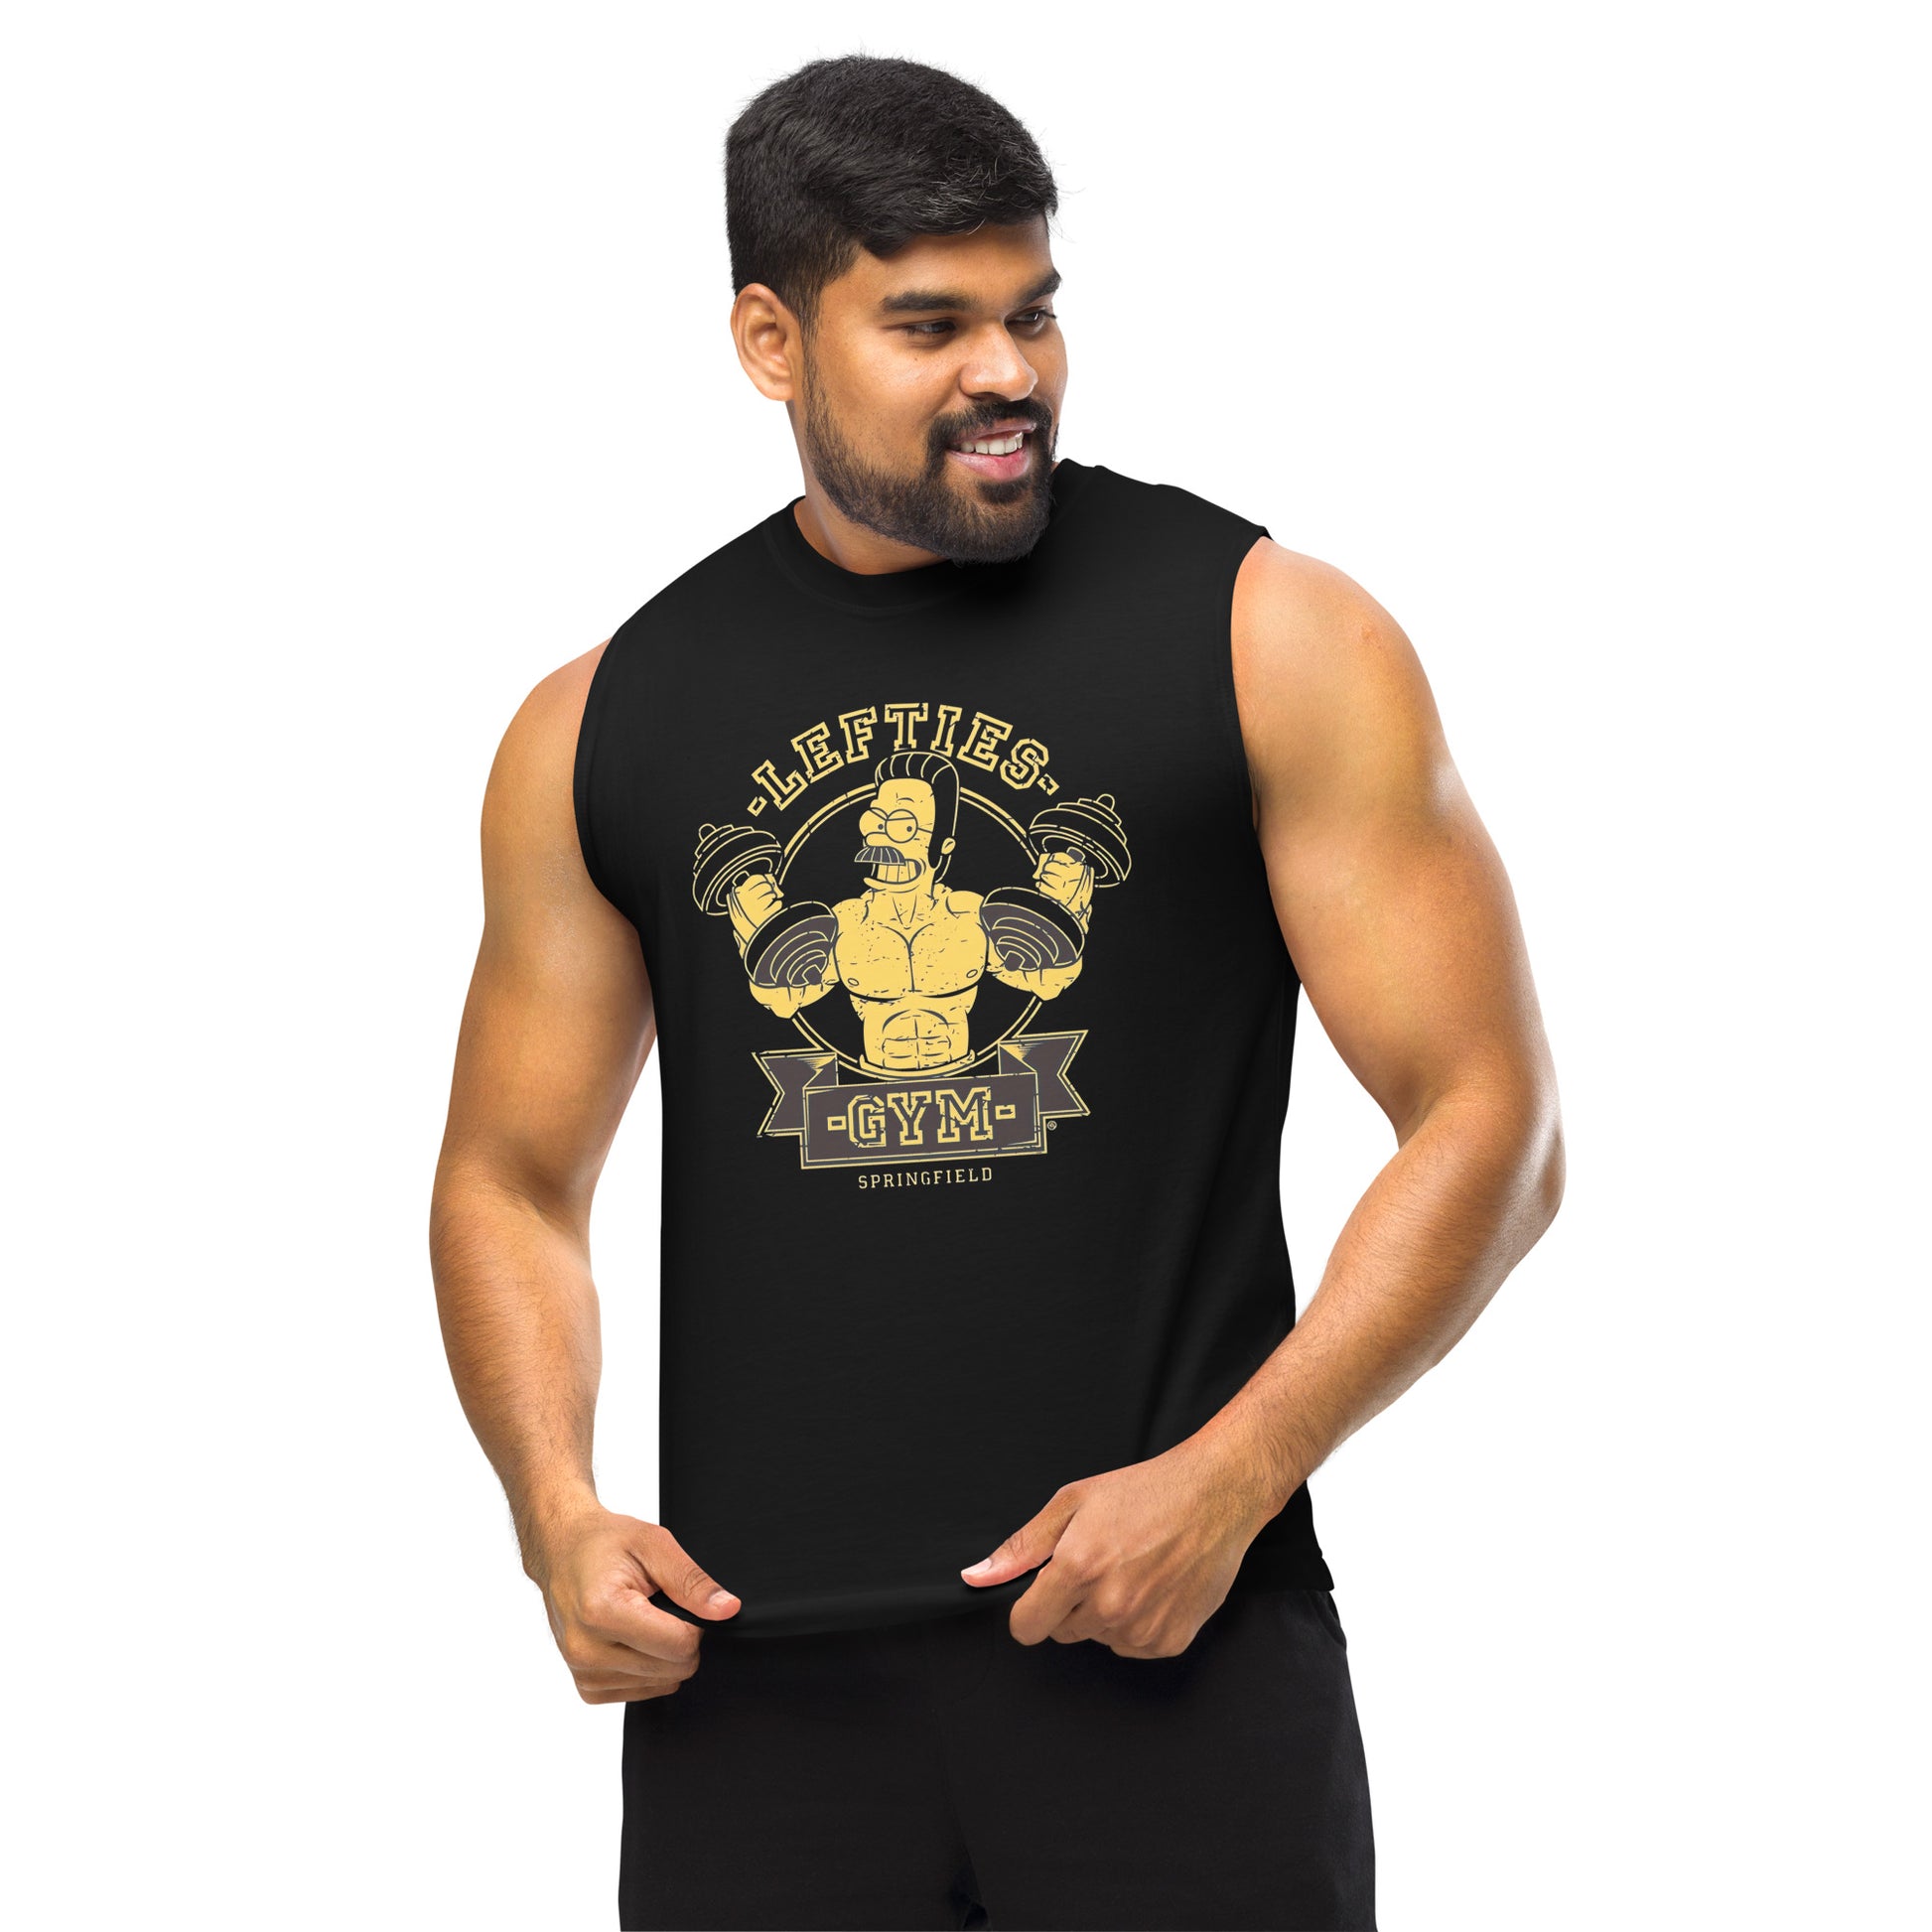 Camiseta sin mangas perfecta para entrenar, Camiseta Lefties Gym comprala en línea y experimenta el mejor servicio al cliente. envíos internacionales.